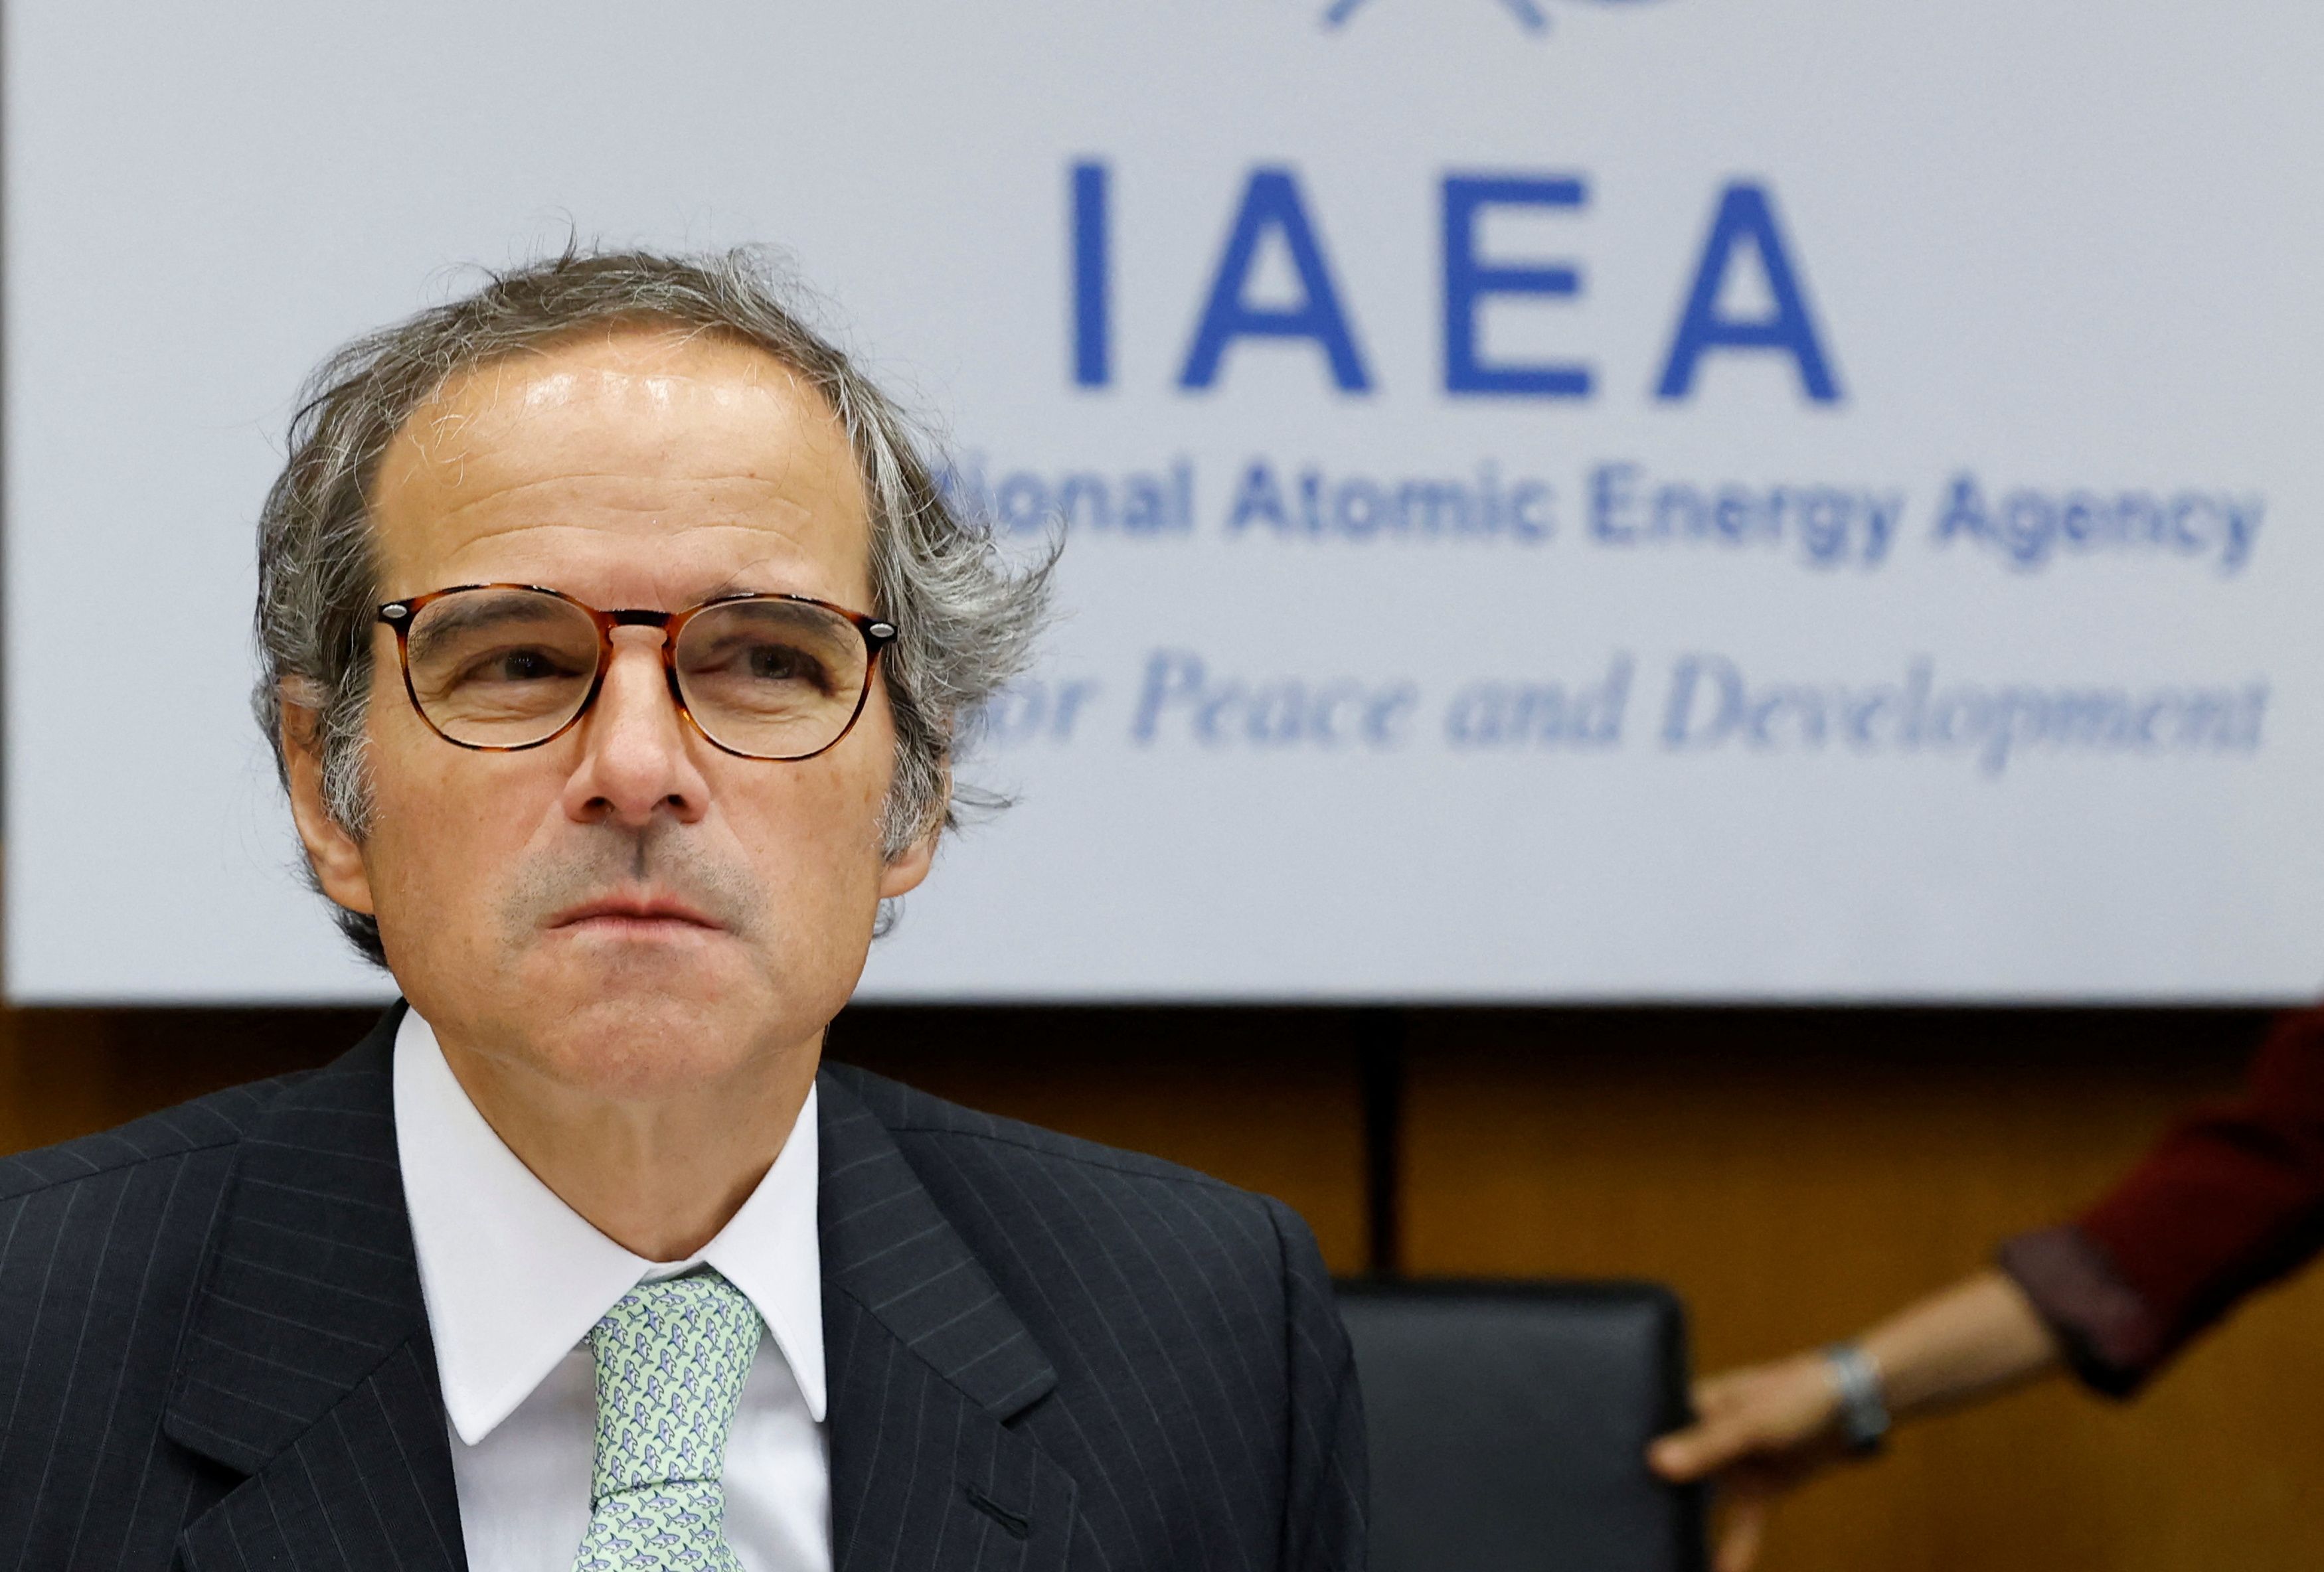 El Director General del Organismo Internacional de Energía Atómica (OIEA), Rafael Grossi, asiste a una reunión de la Junta de Gobernadores del OIEA en Viena, Austria, el 6 de junio de 2022 (REUTERS/Leonhard Foeger)